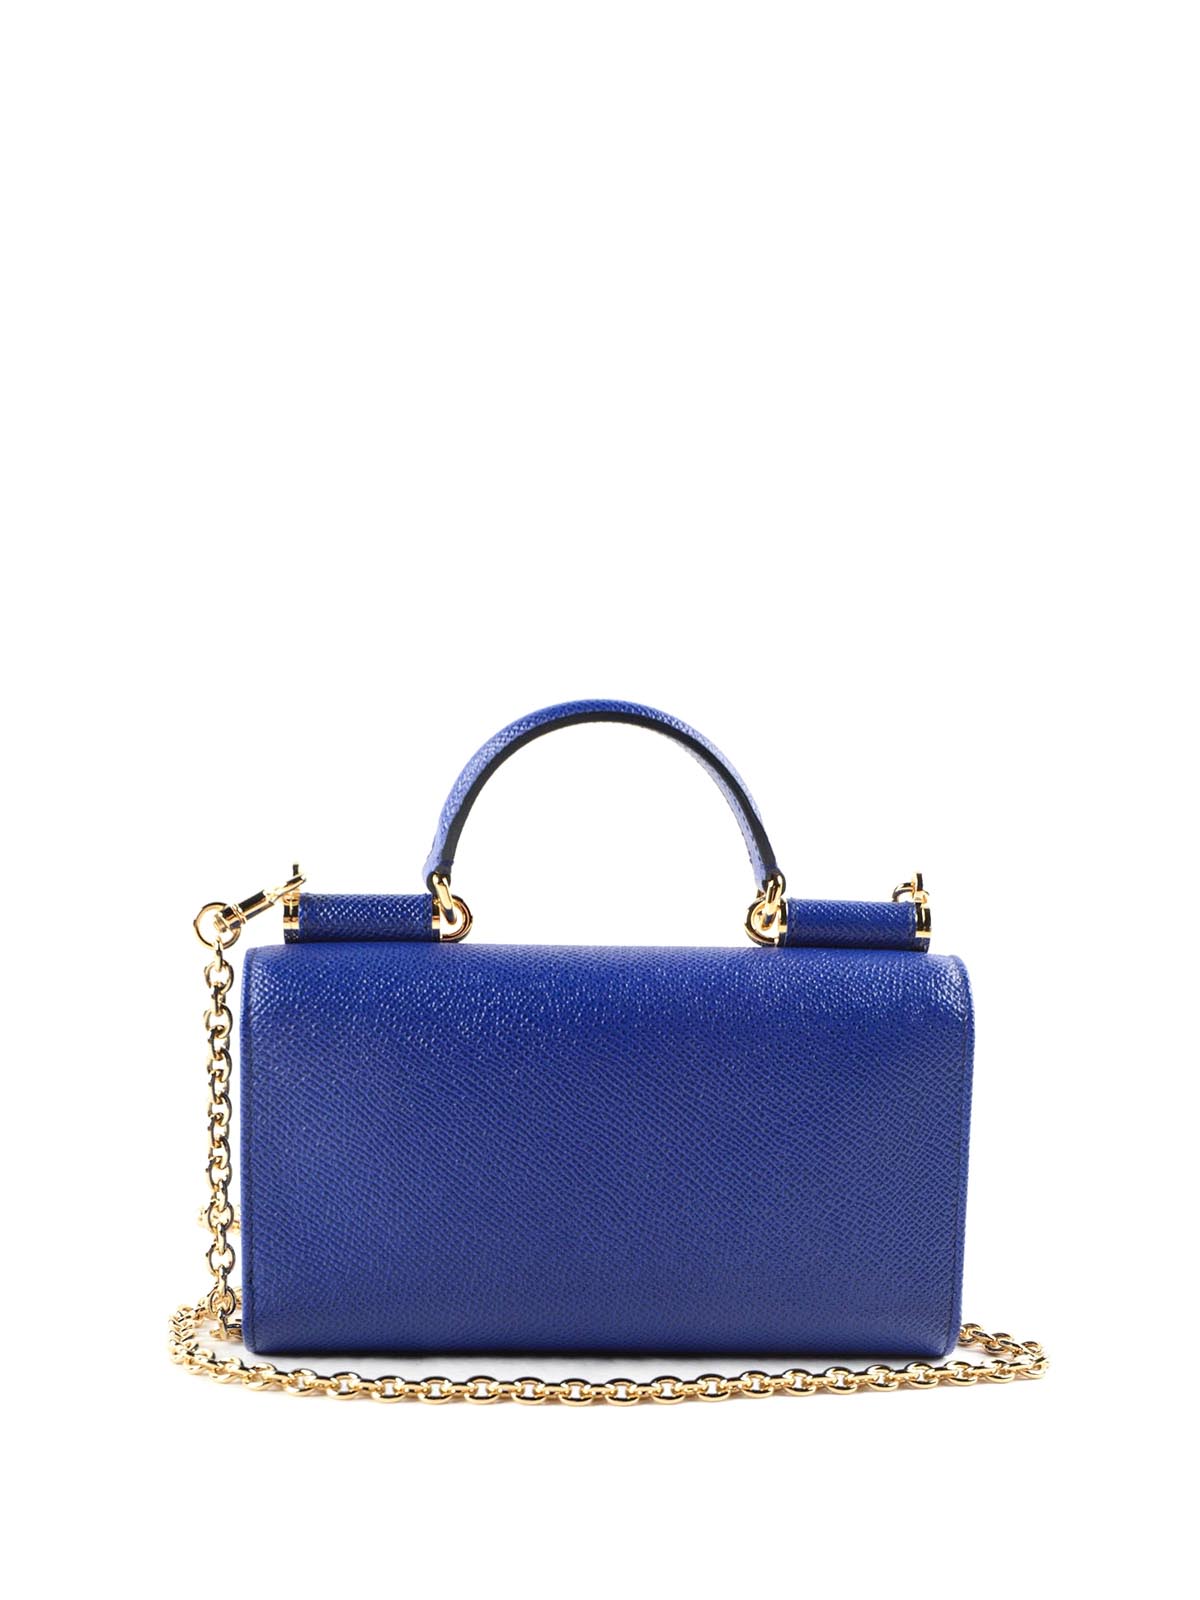 Dolce & Gabbana Dauphine Mini Von Bag Blue